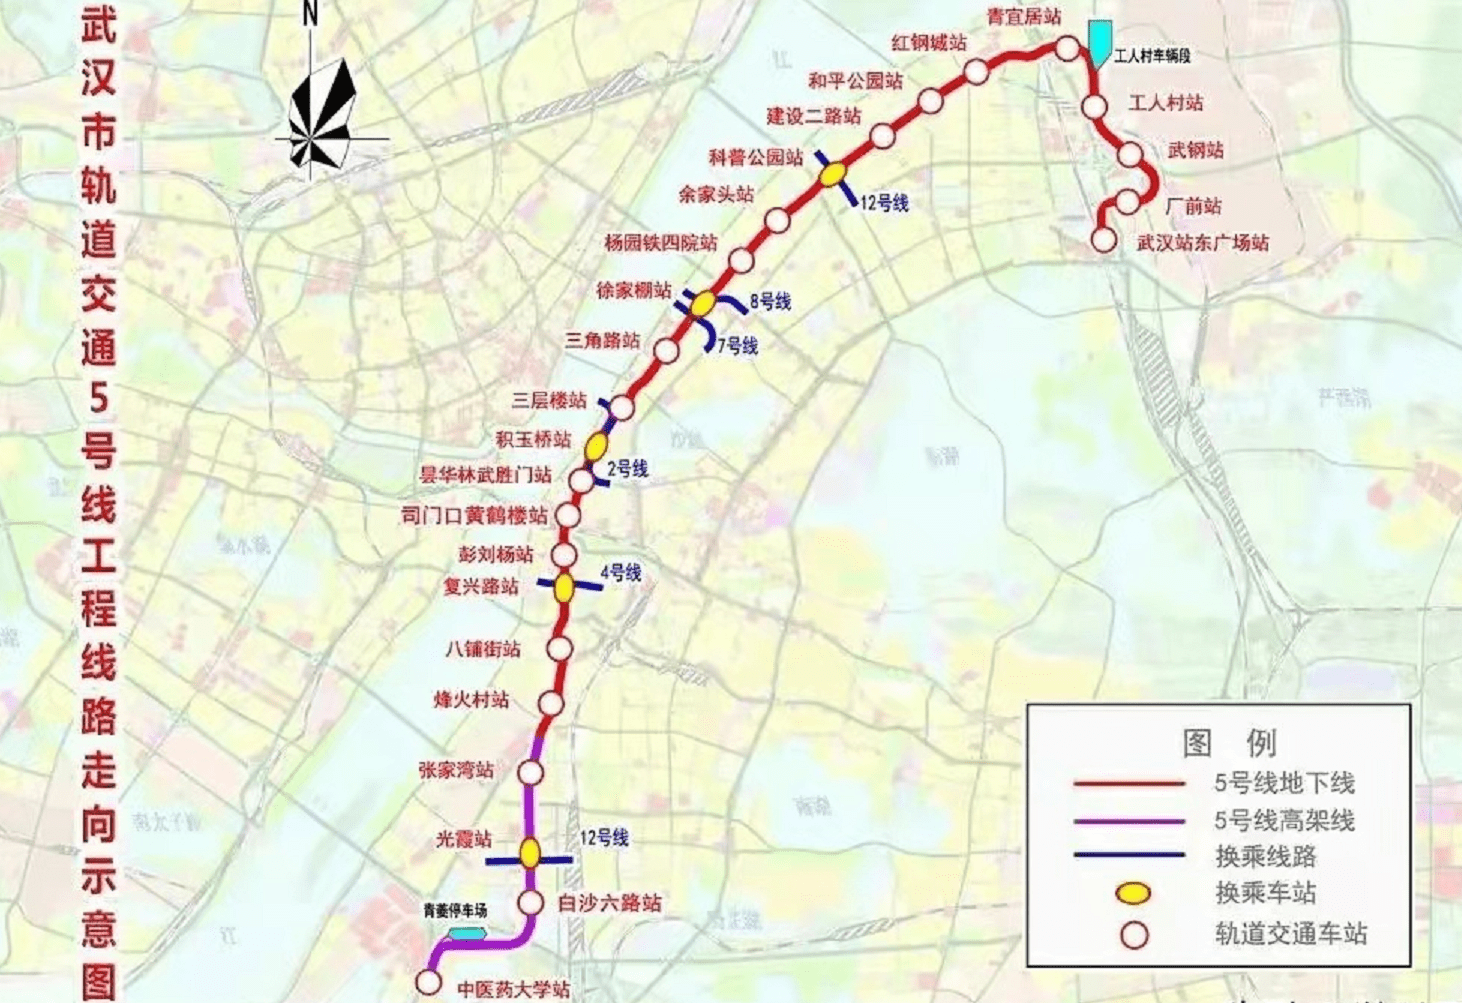 原创无人驾驶地铁年底通车!武汉交通又有大变化了!